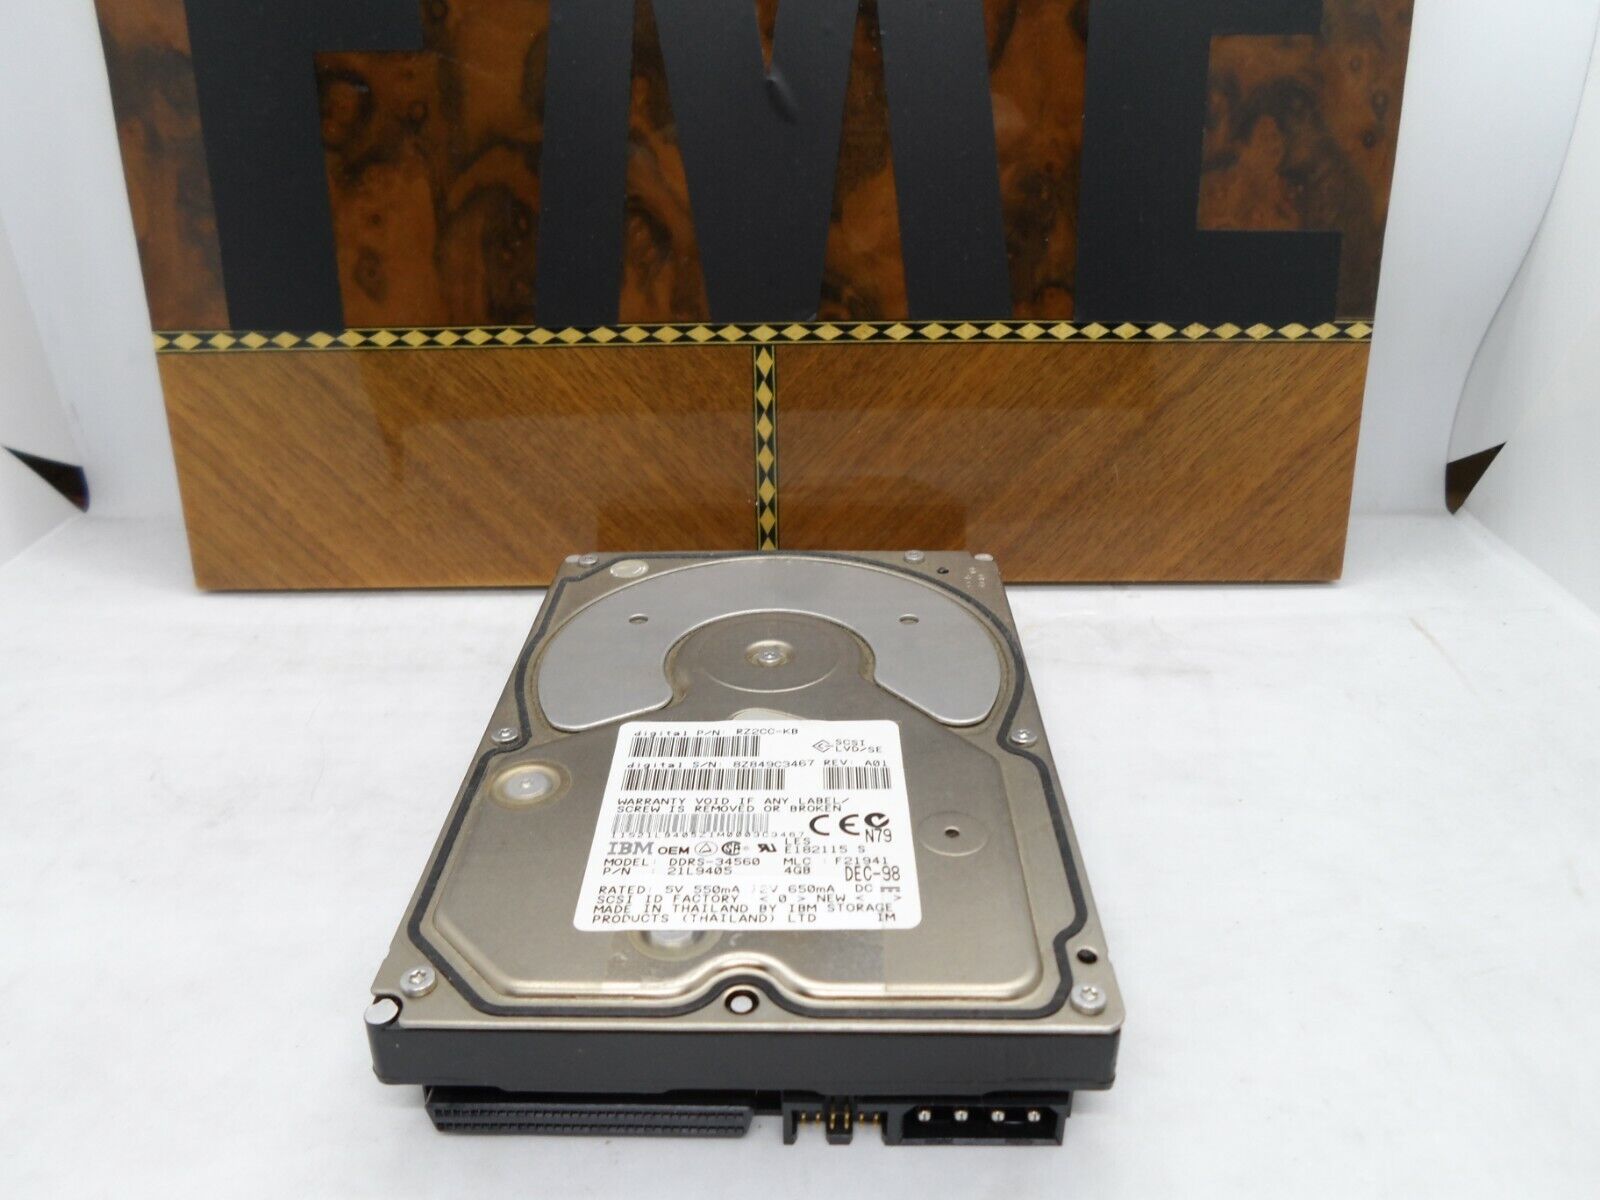 HP Compaq DEC Digital RZ2CC-KB 21L9405 4.3GB 7200 RPM 68P SCSI HDD for XP1000